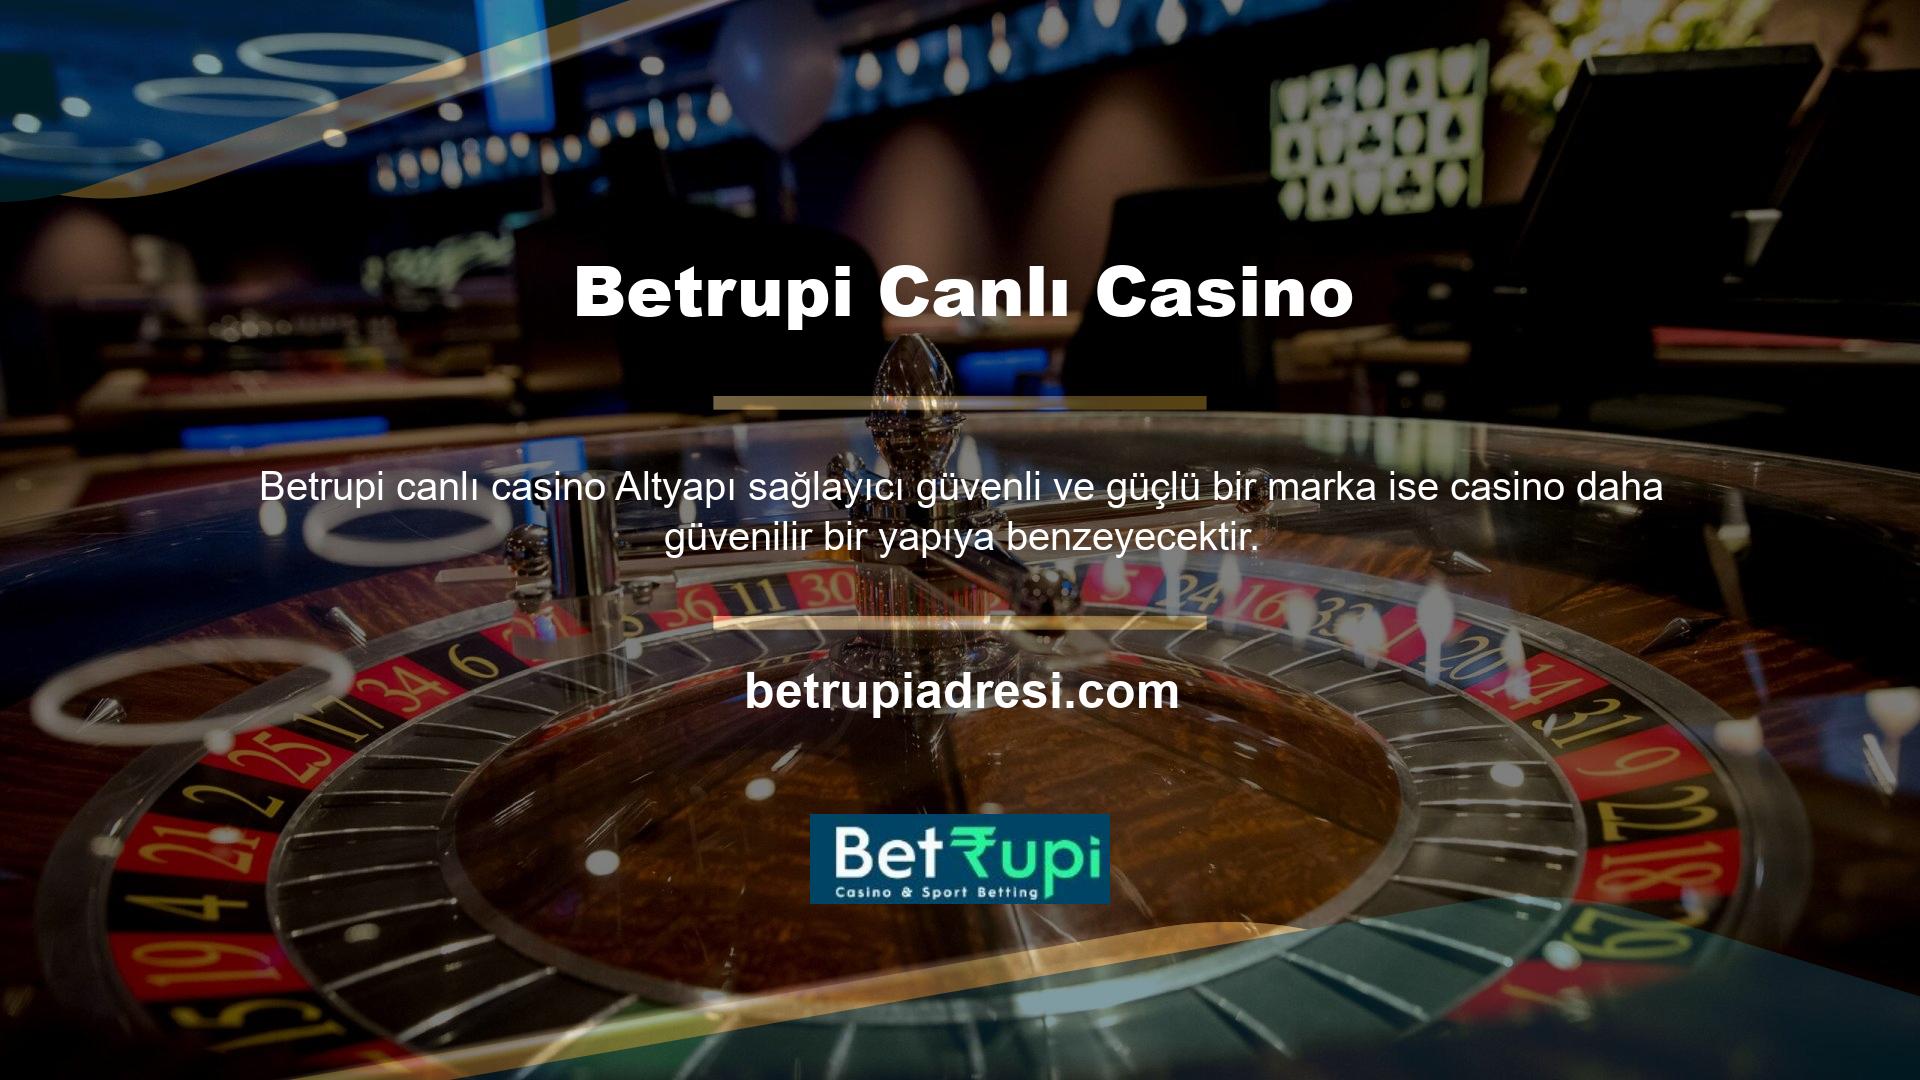 Betrupi Canlı Casino ekranına bir göz atarsanız ne demek istediğimizi daha iyi anlayacaksınız